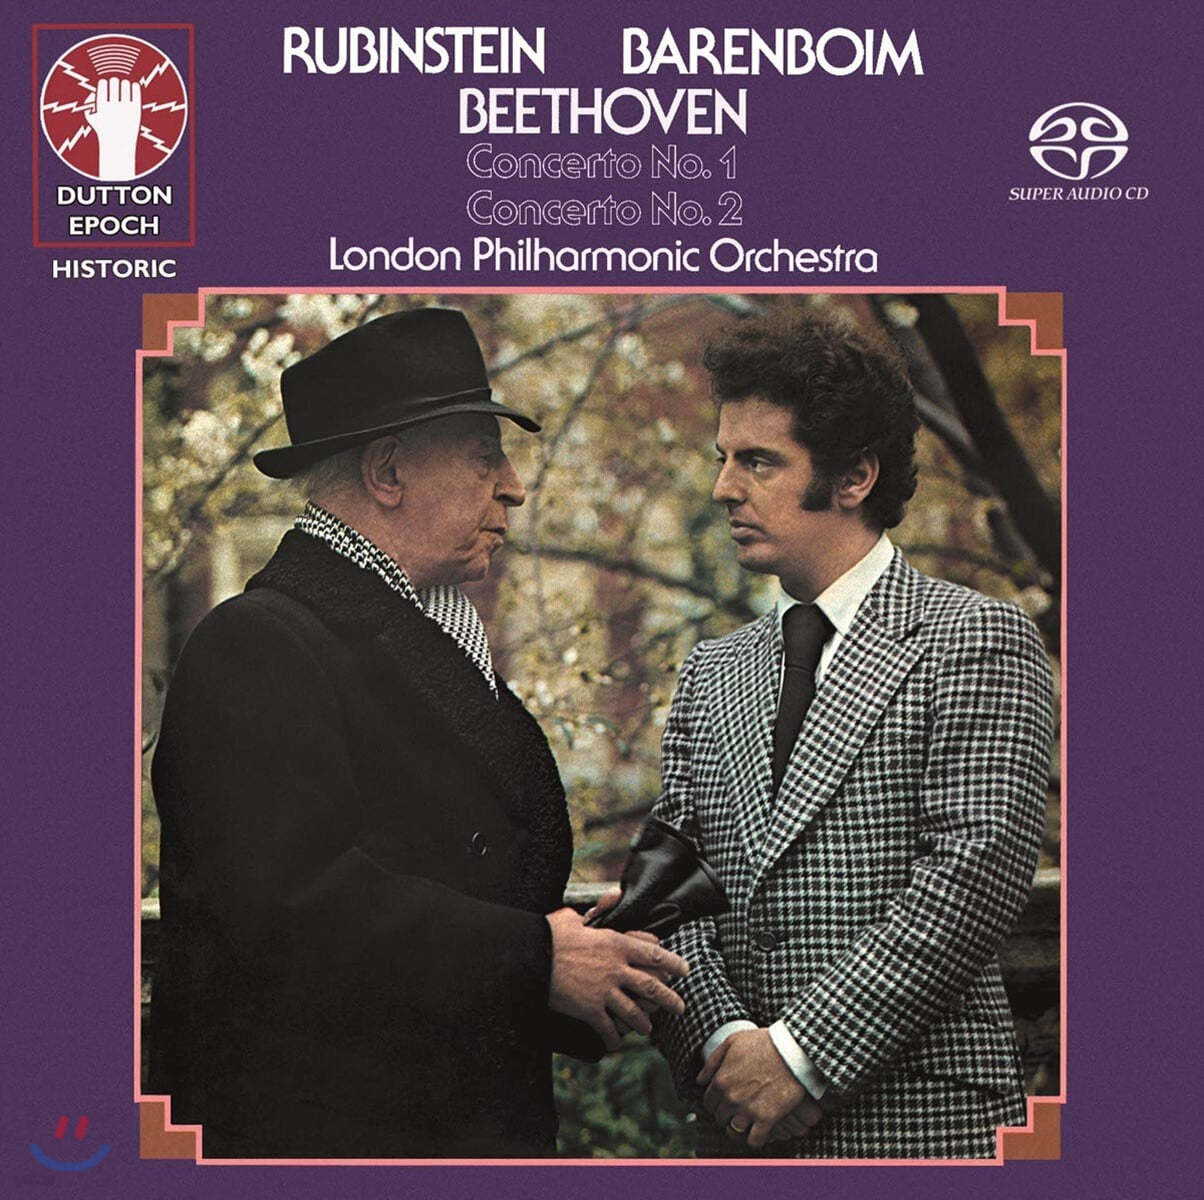 Artur Rubinstein 베토벤: 피아노 협주곡 1, 2번 (Beethoven: Piano Concertos Op. 15, 19)